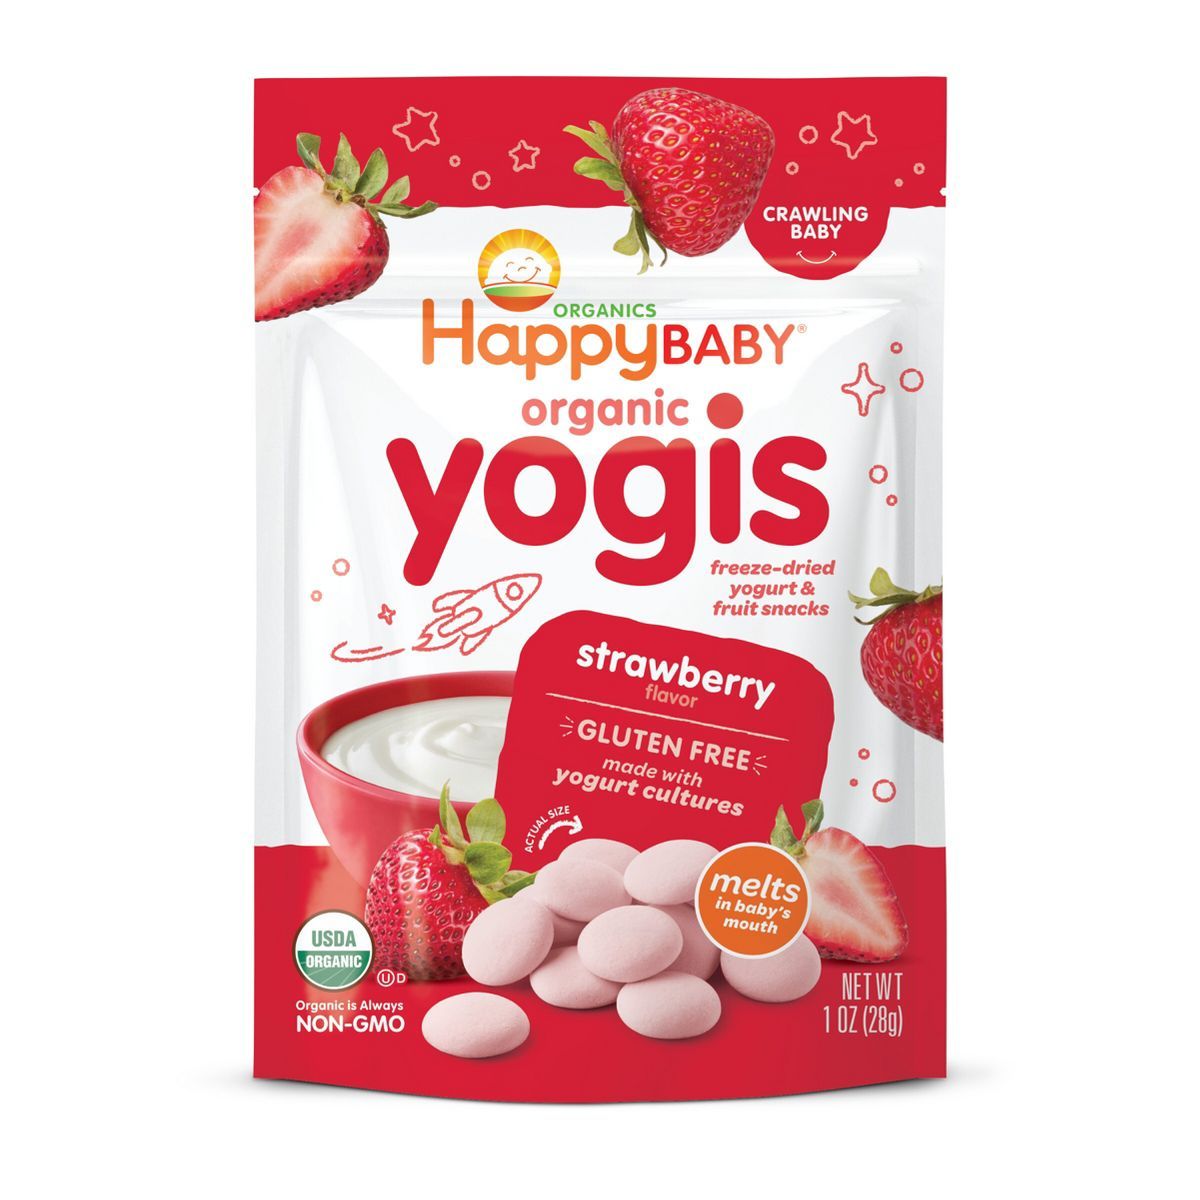 HappyBaby Organic Yogis Strawberry Freeze-Dried Yogurt & Fruit Baby Snacks - 1oz | Target